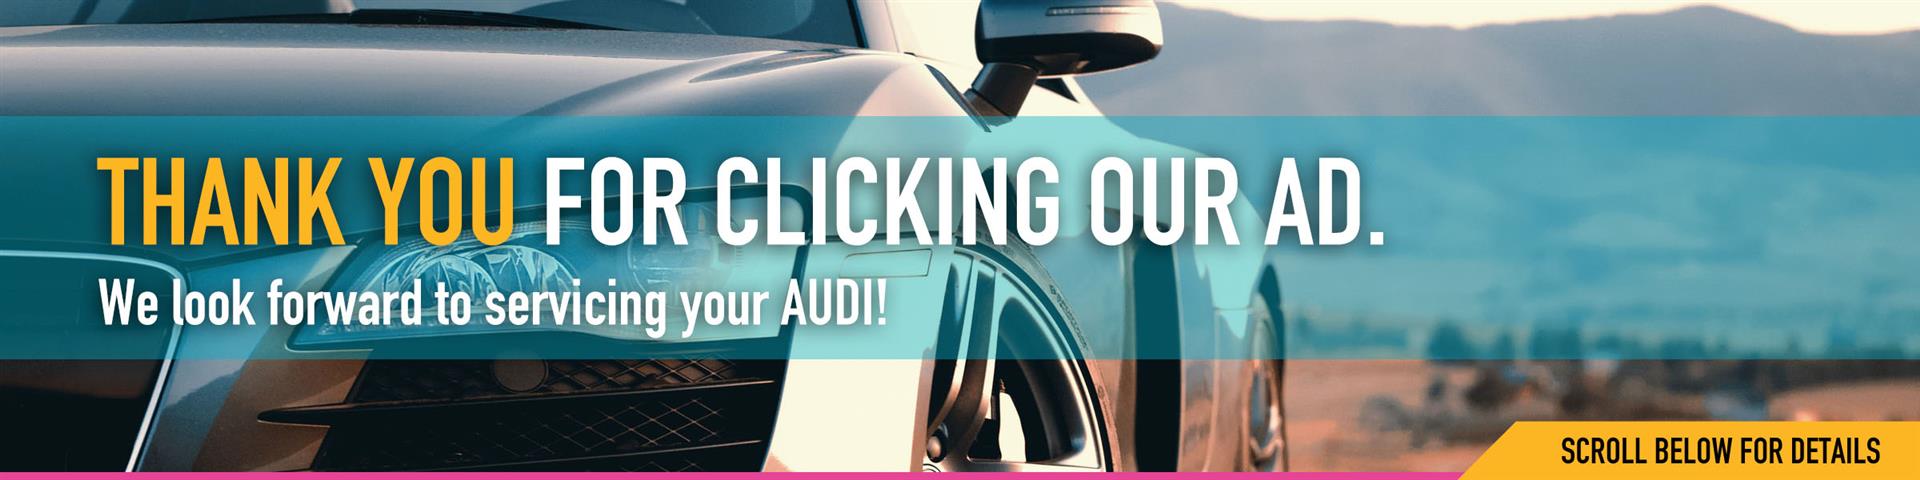 Audi Repair & Service Special - Car Tender